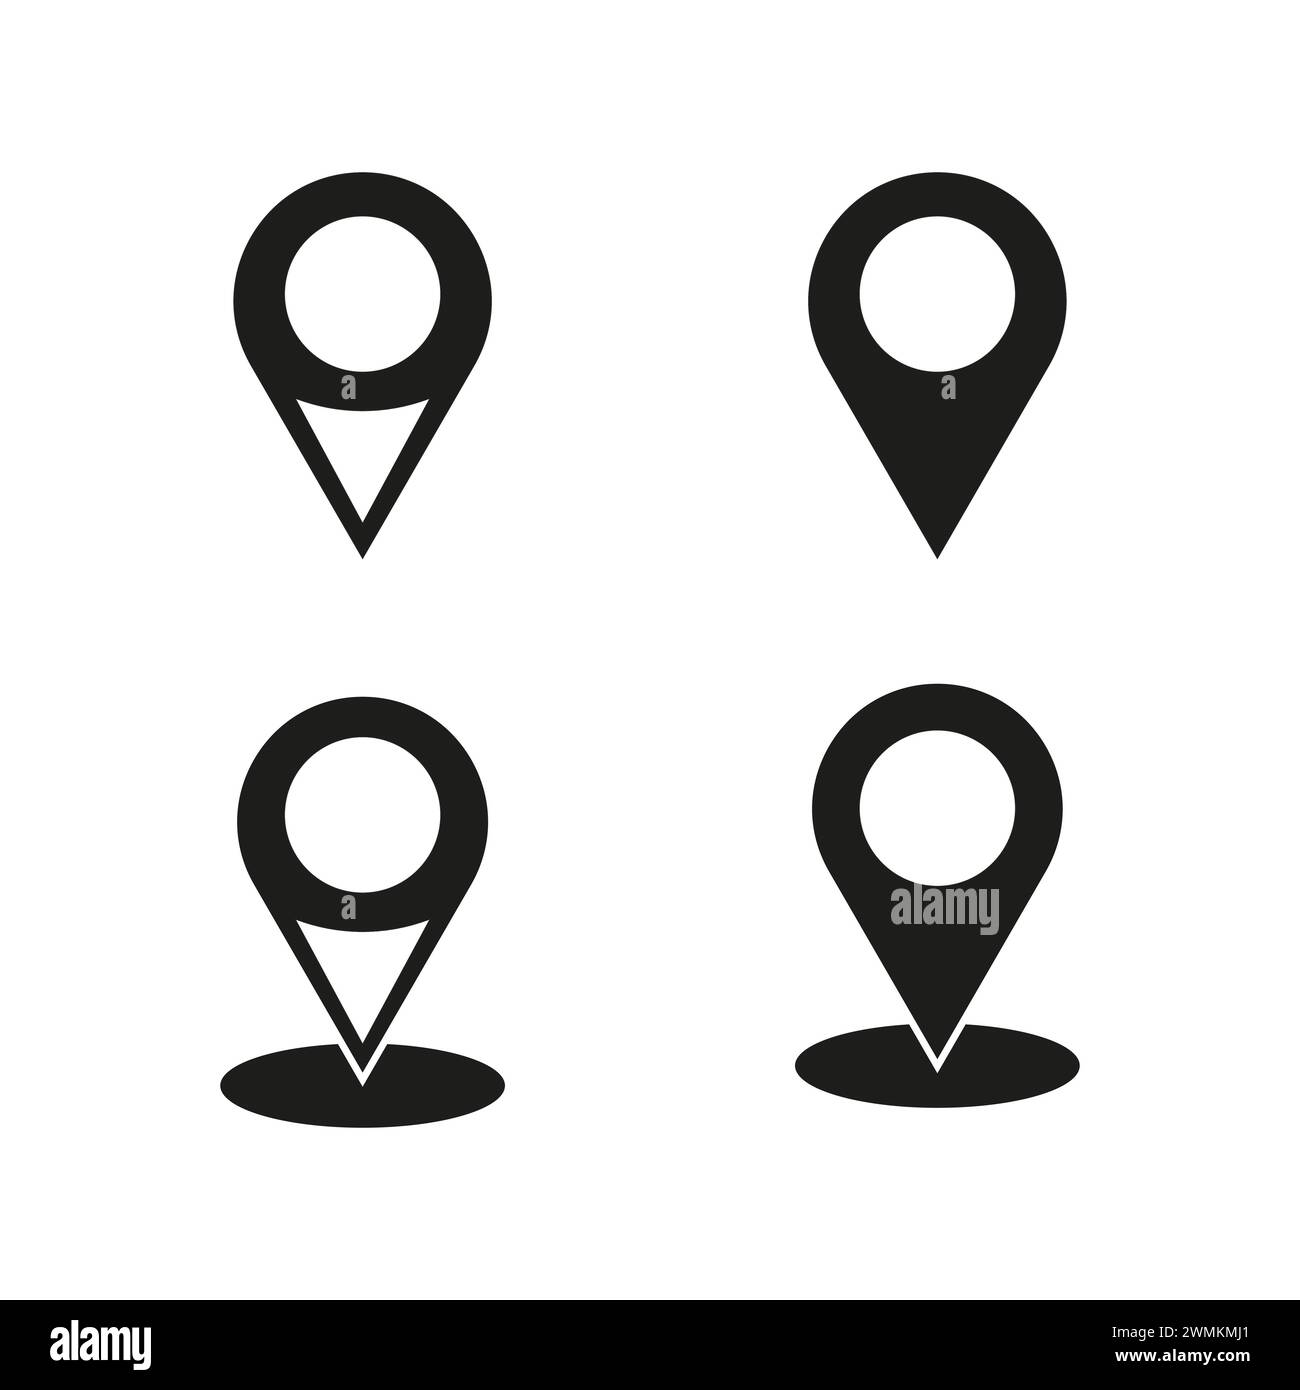 Icone dei pin di posizione. Marcatori di navigazione. Illustrazione vettoriale. EPS 10. Illustrazione Vettoriale